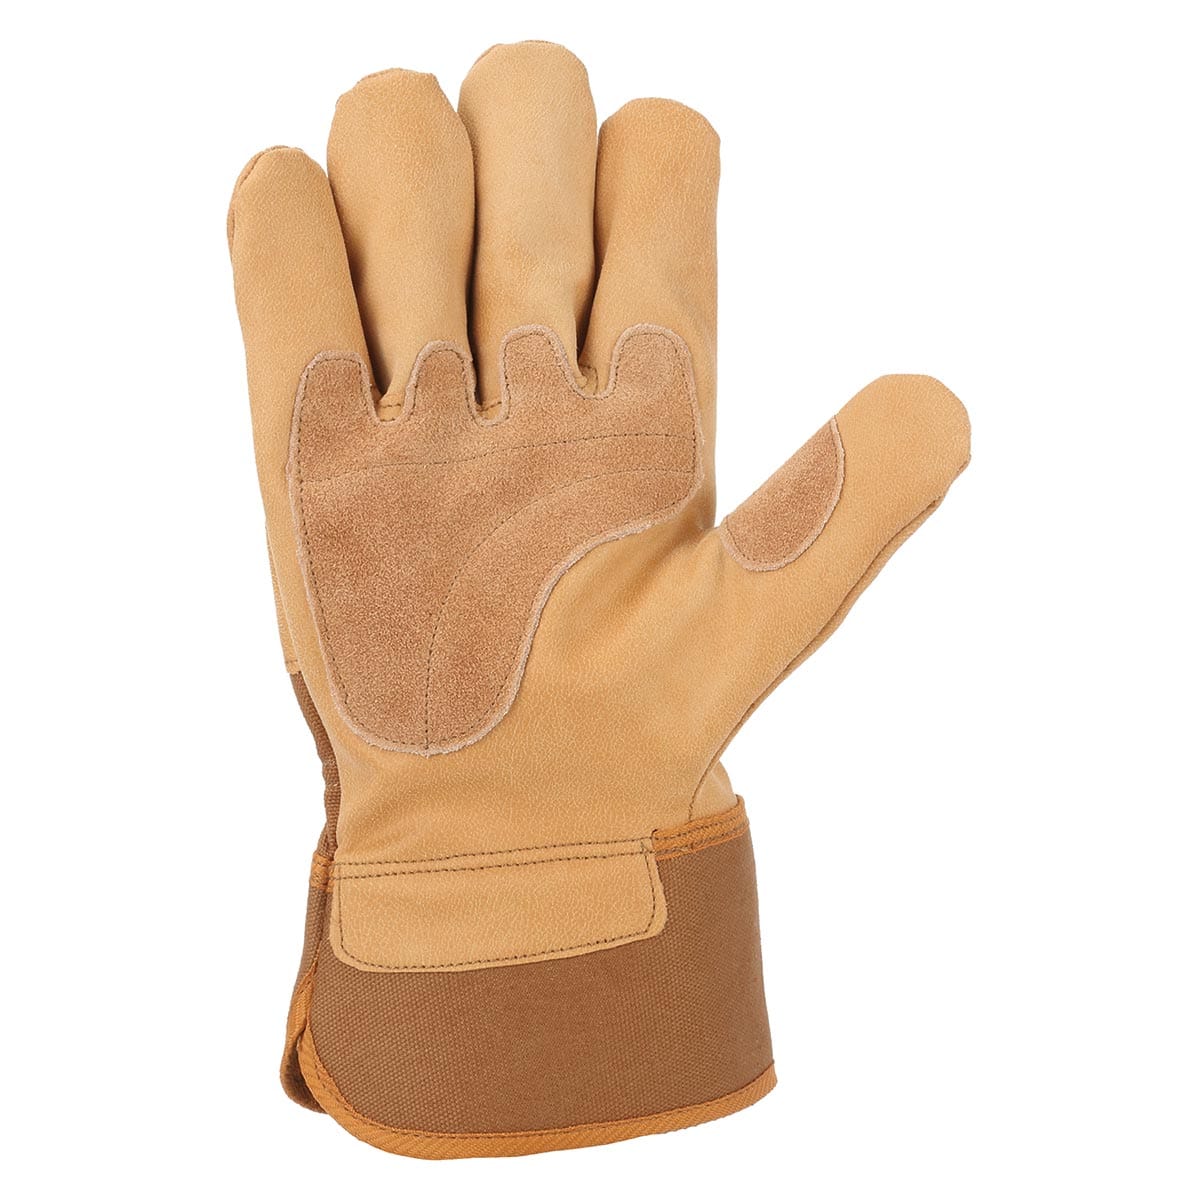 Carhartt System 5 Safety Cuff Work Glove